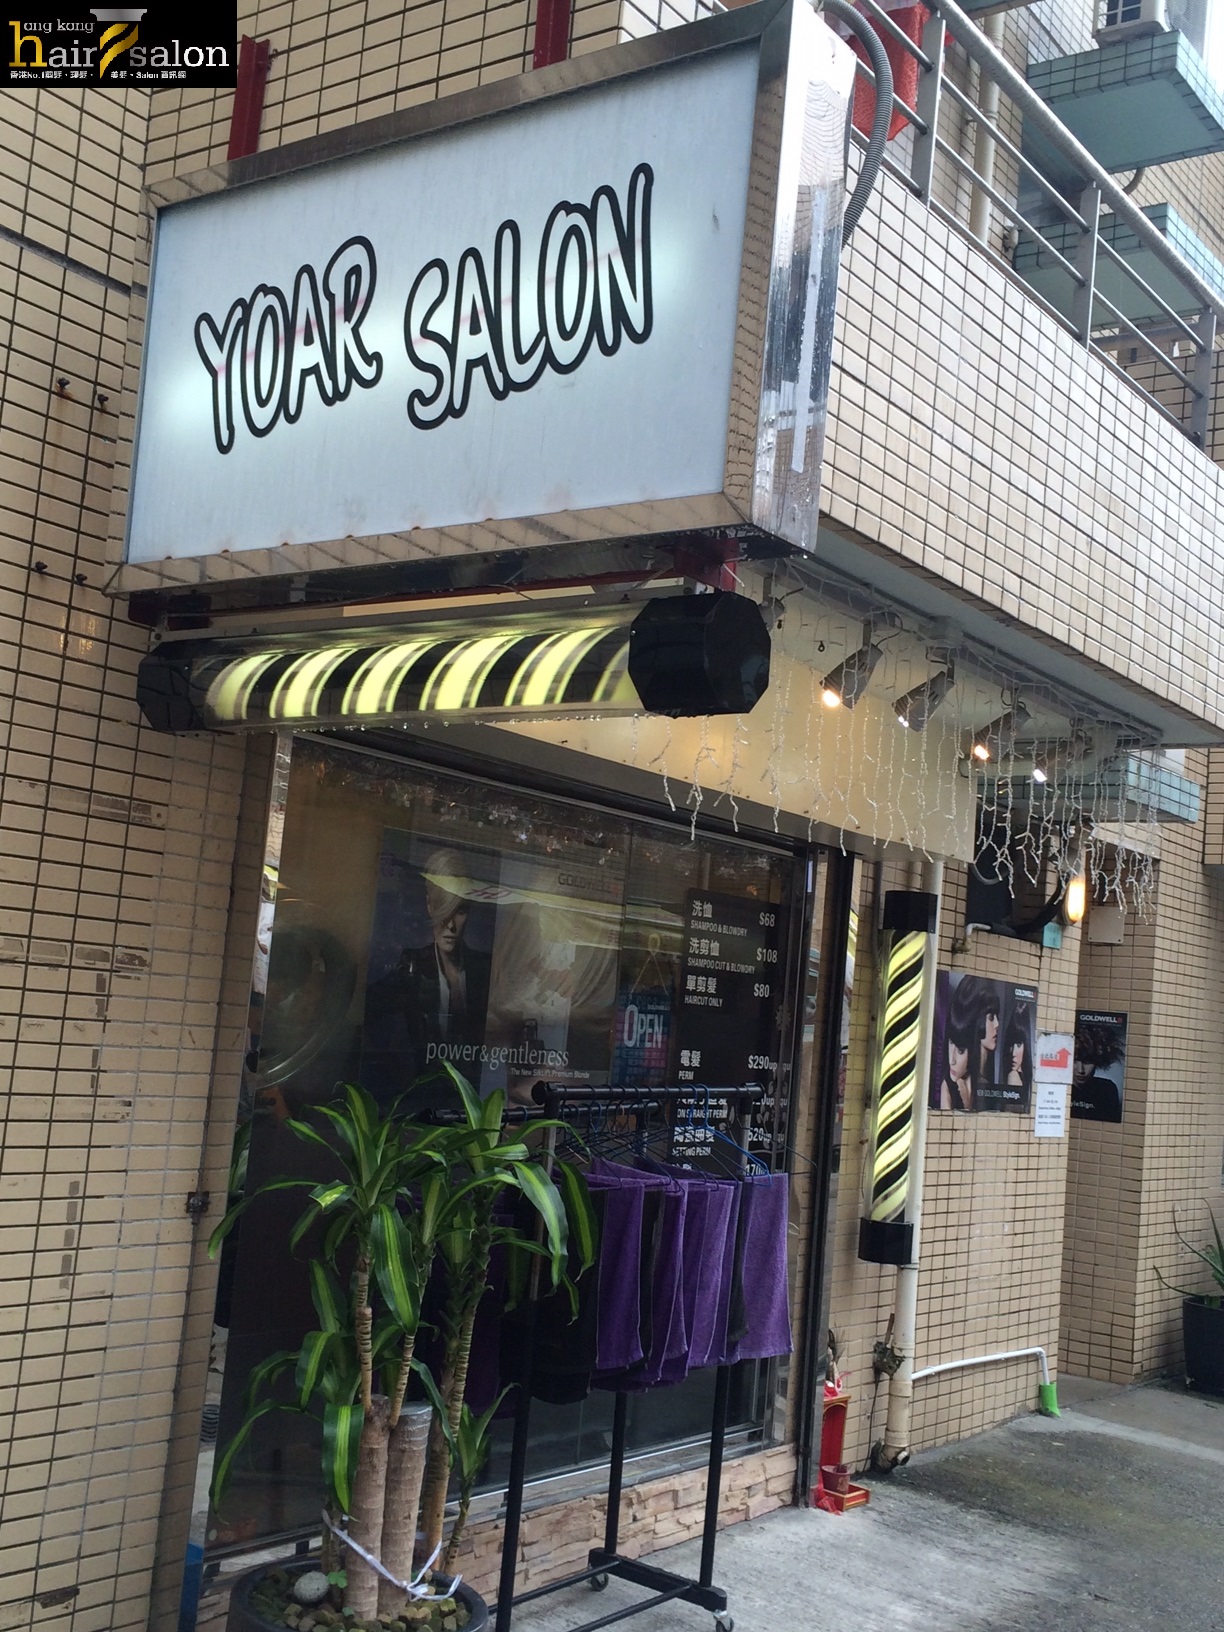 Electric hair: Yoar Salon (馬灣)